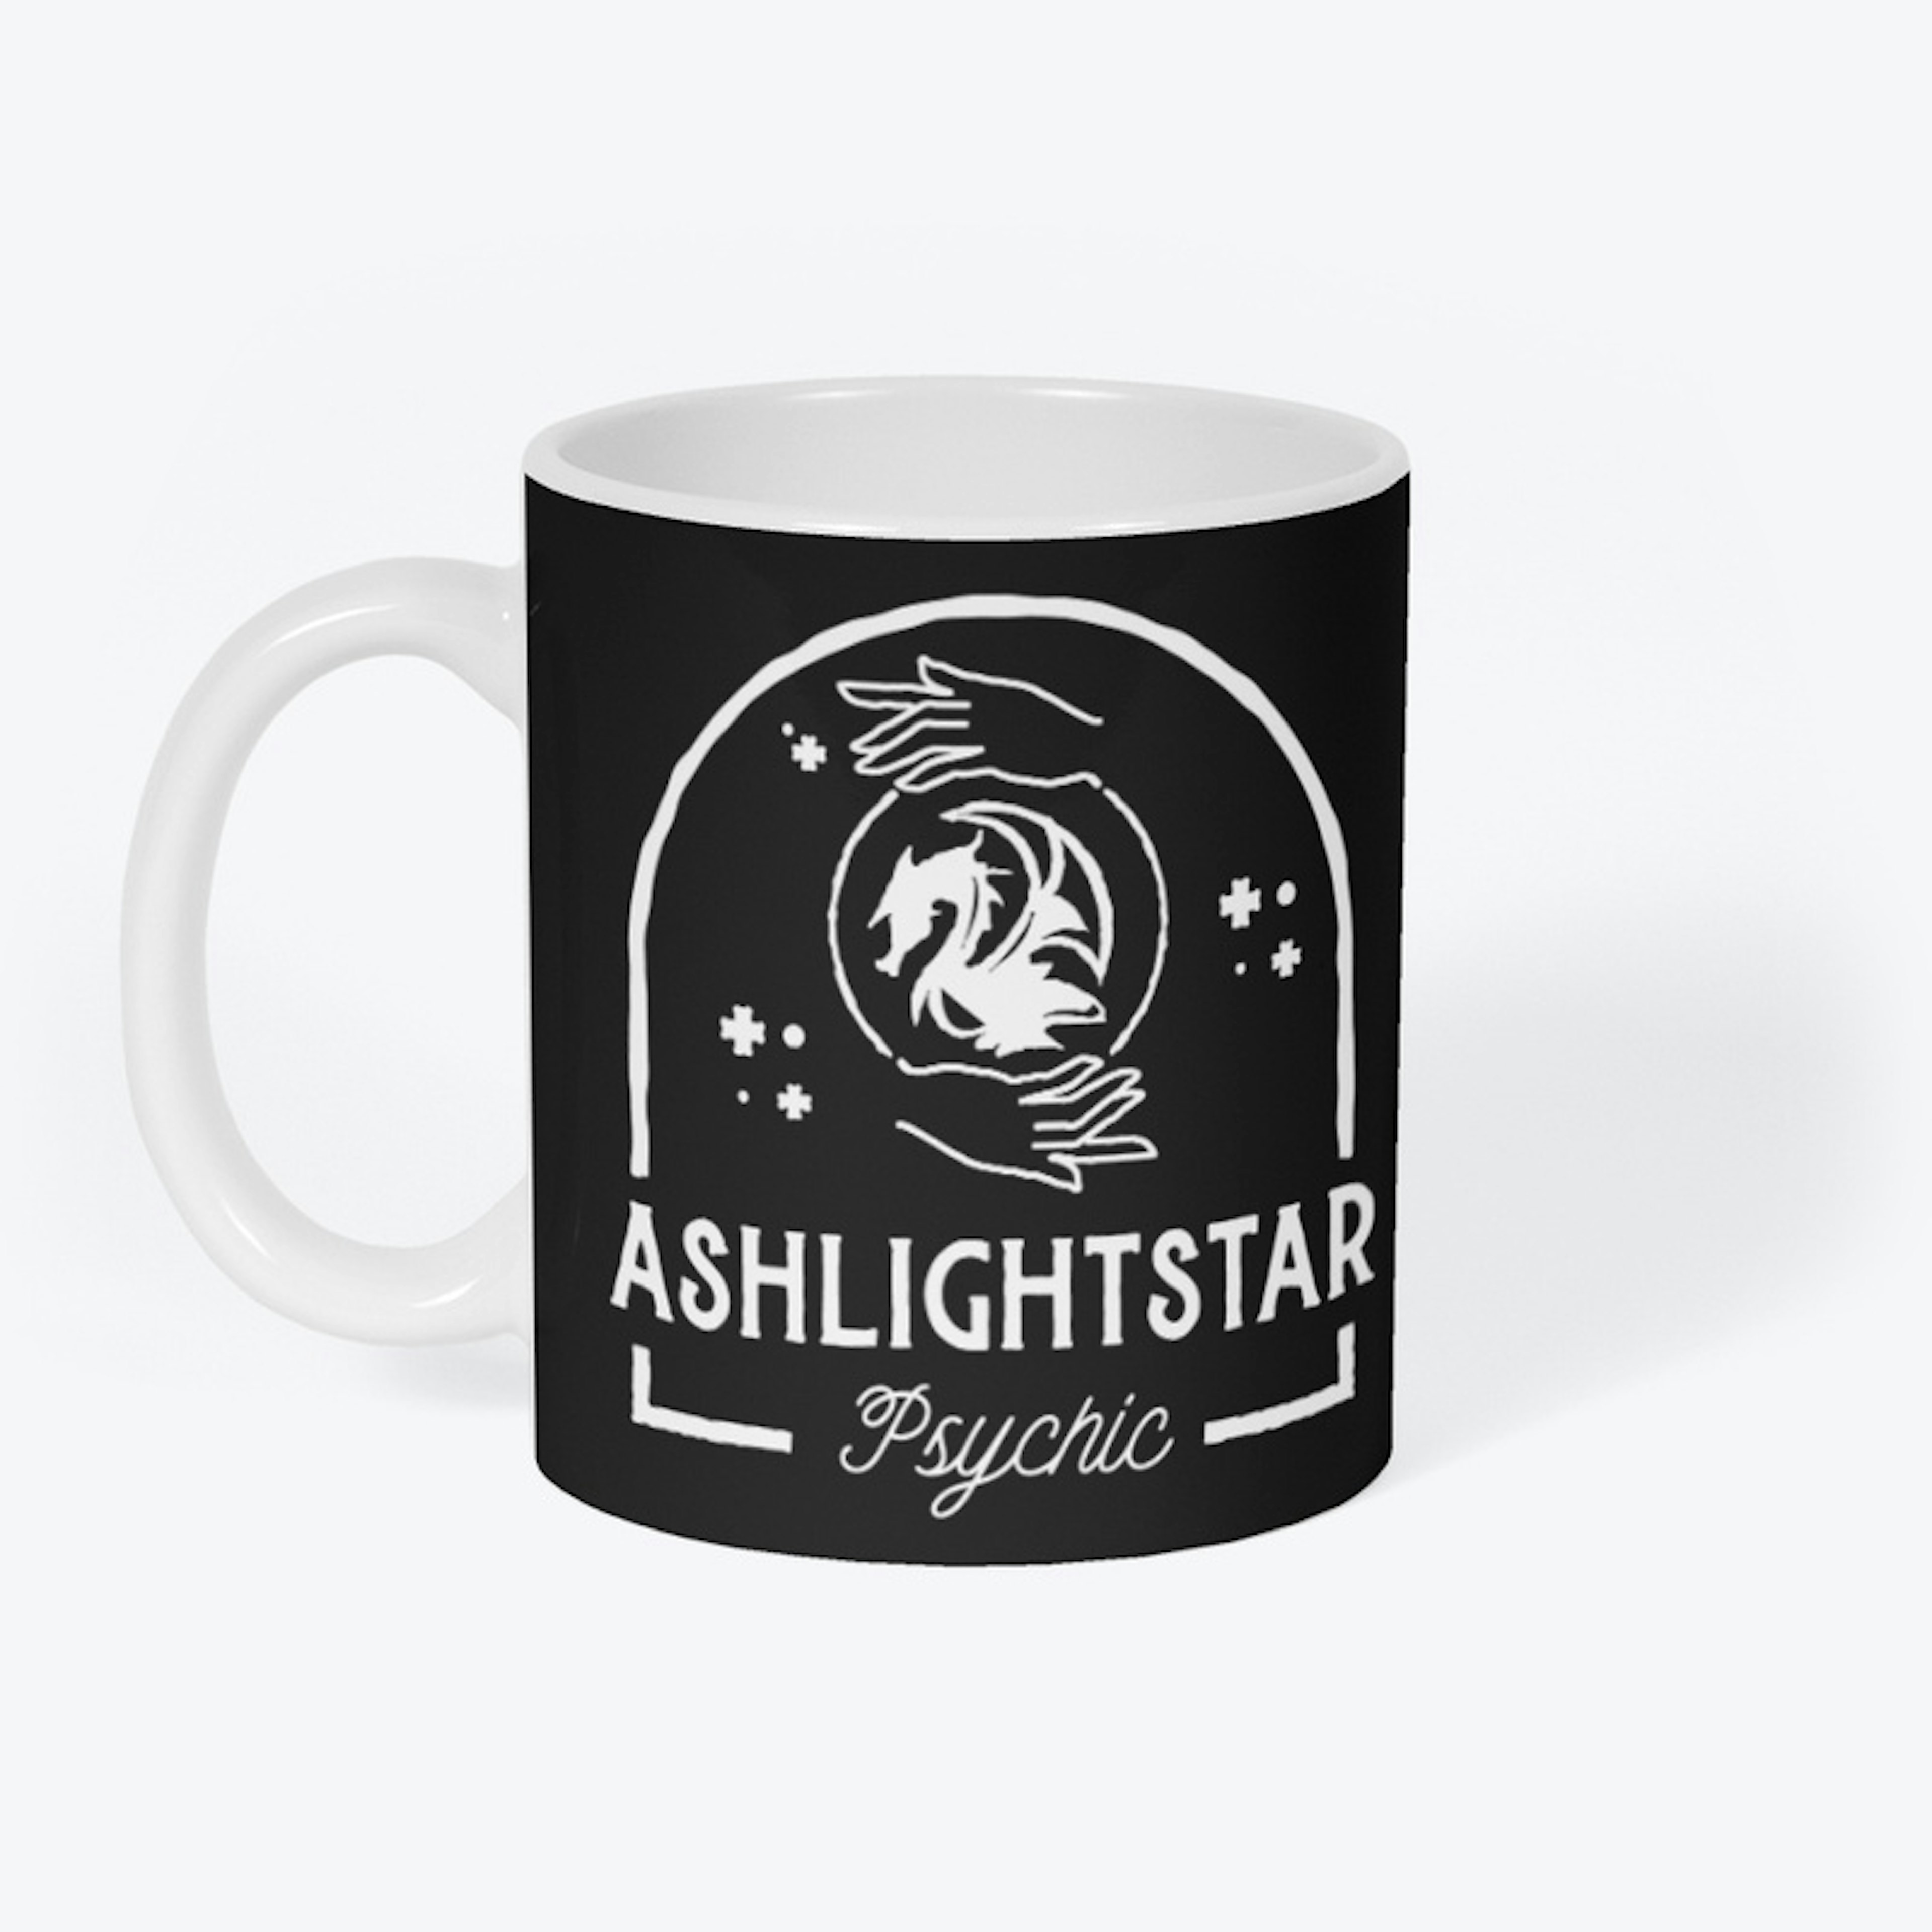 Ashlightstar